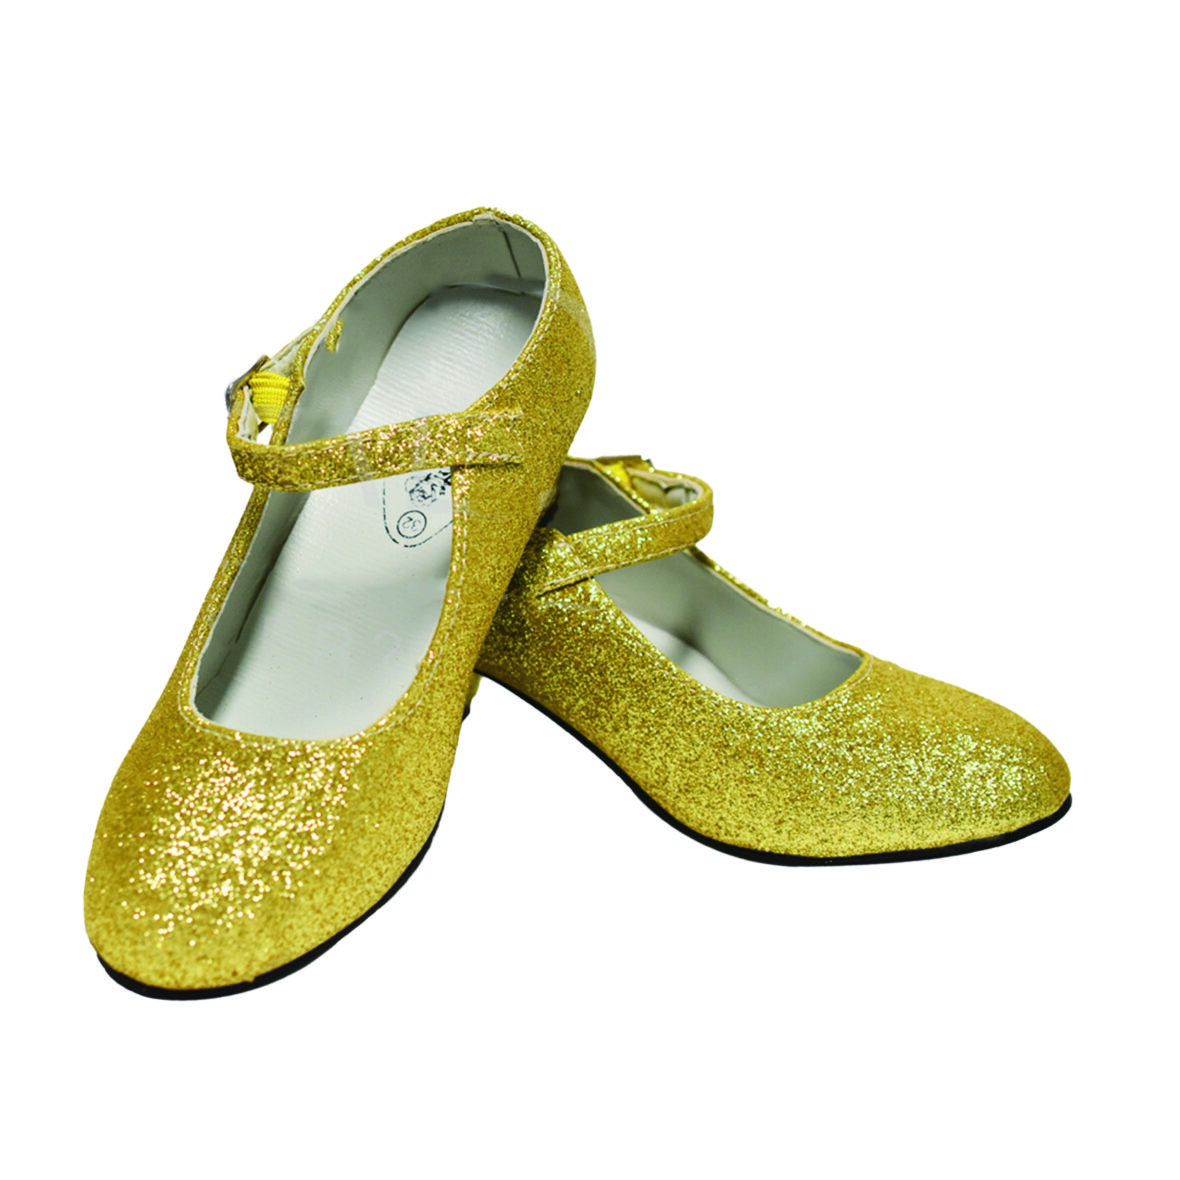 Zapatos Princesa Dorado con Purpurina